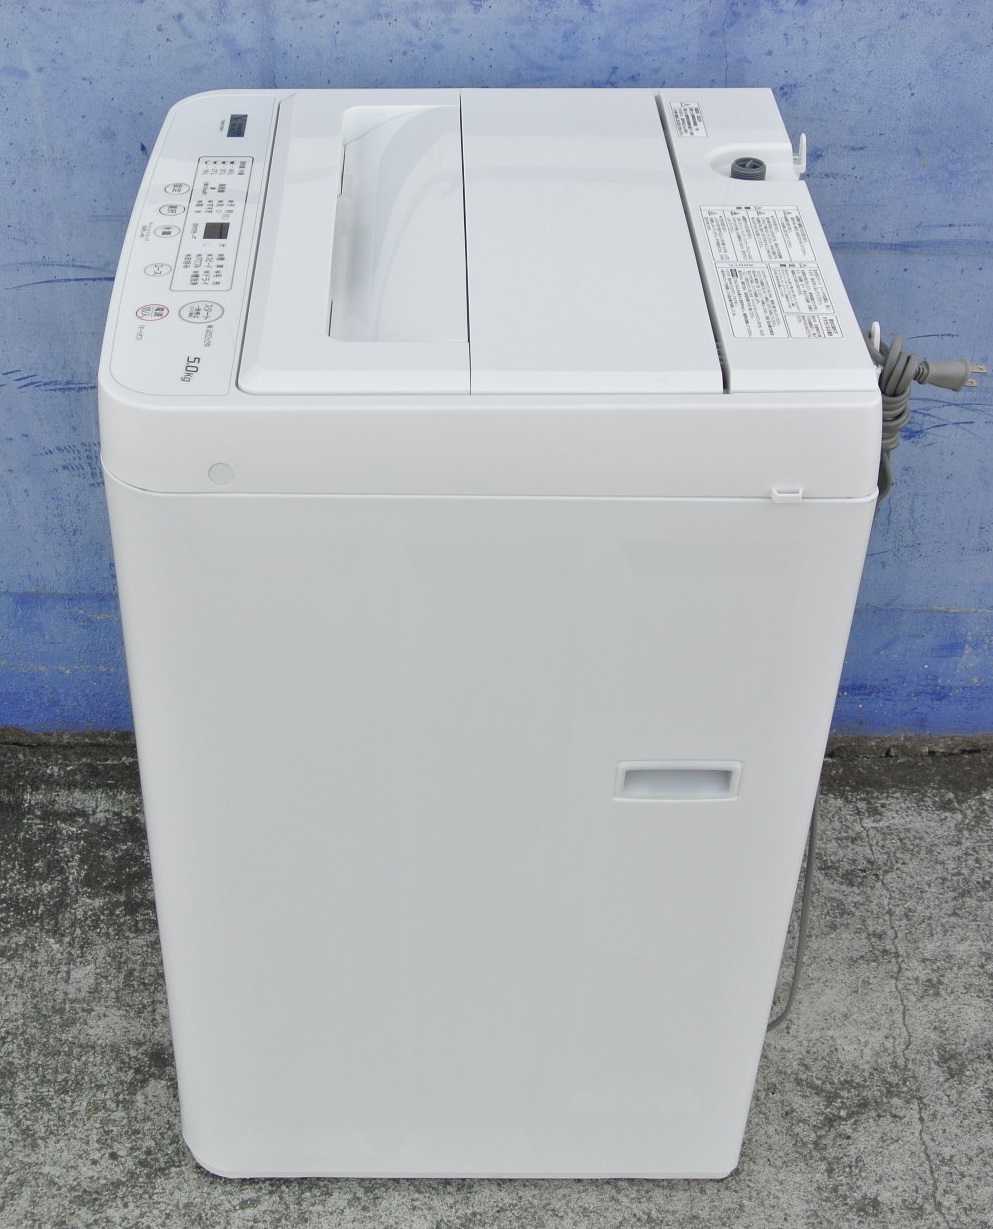 ヤマダ電機オリジナル 全自動電気洗濯機 (5kg) リサイクルショップ宮崎 